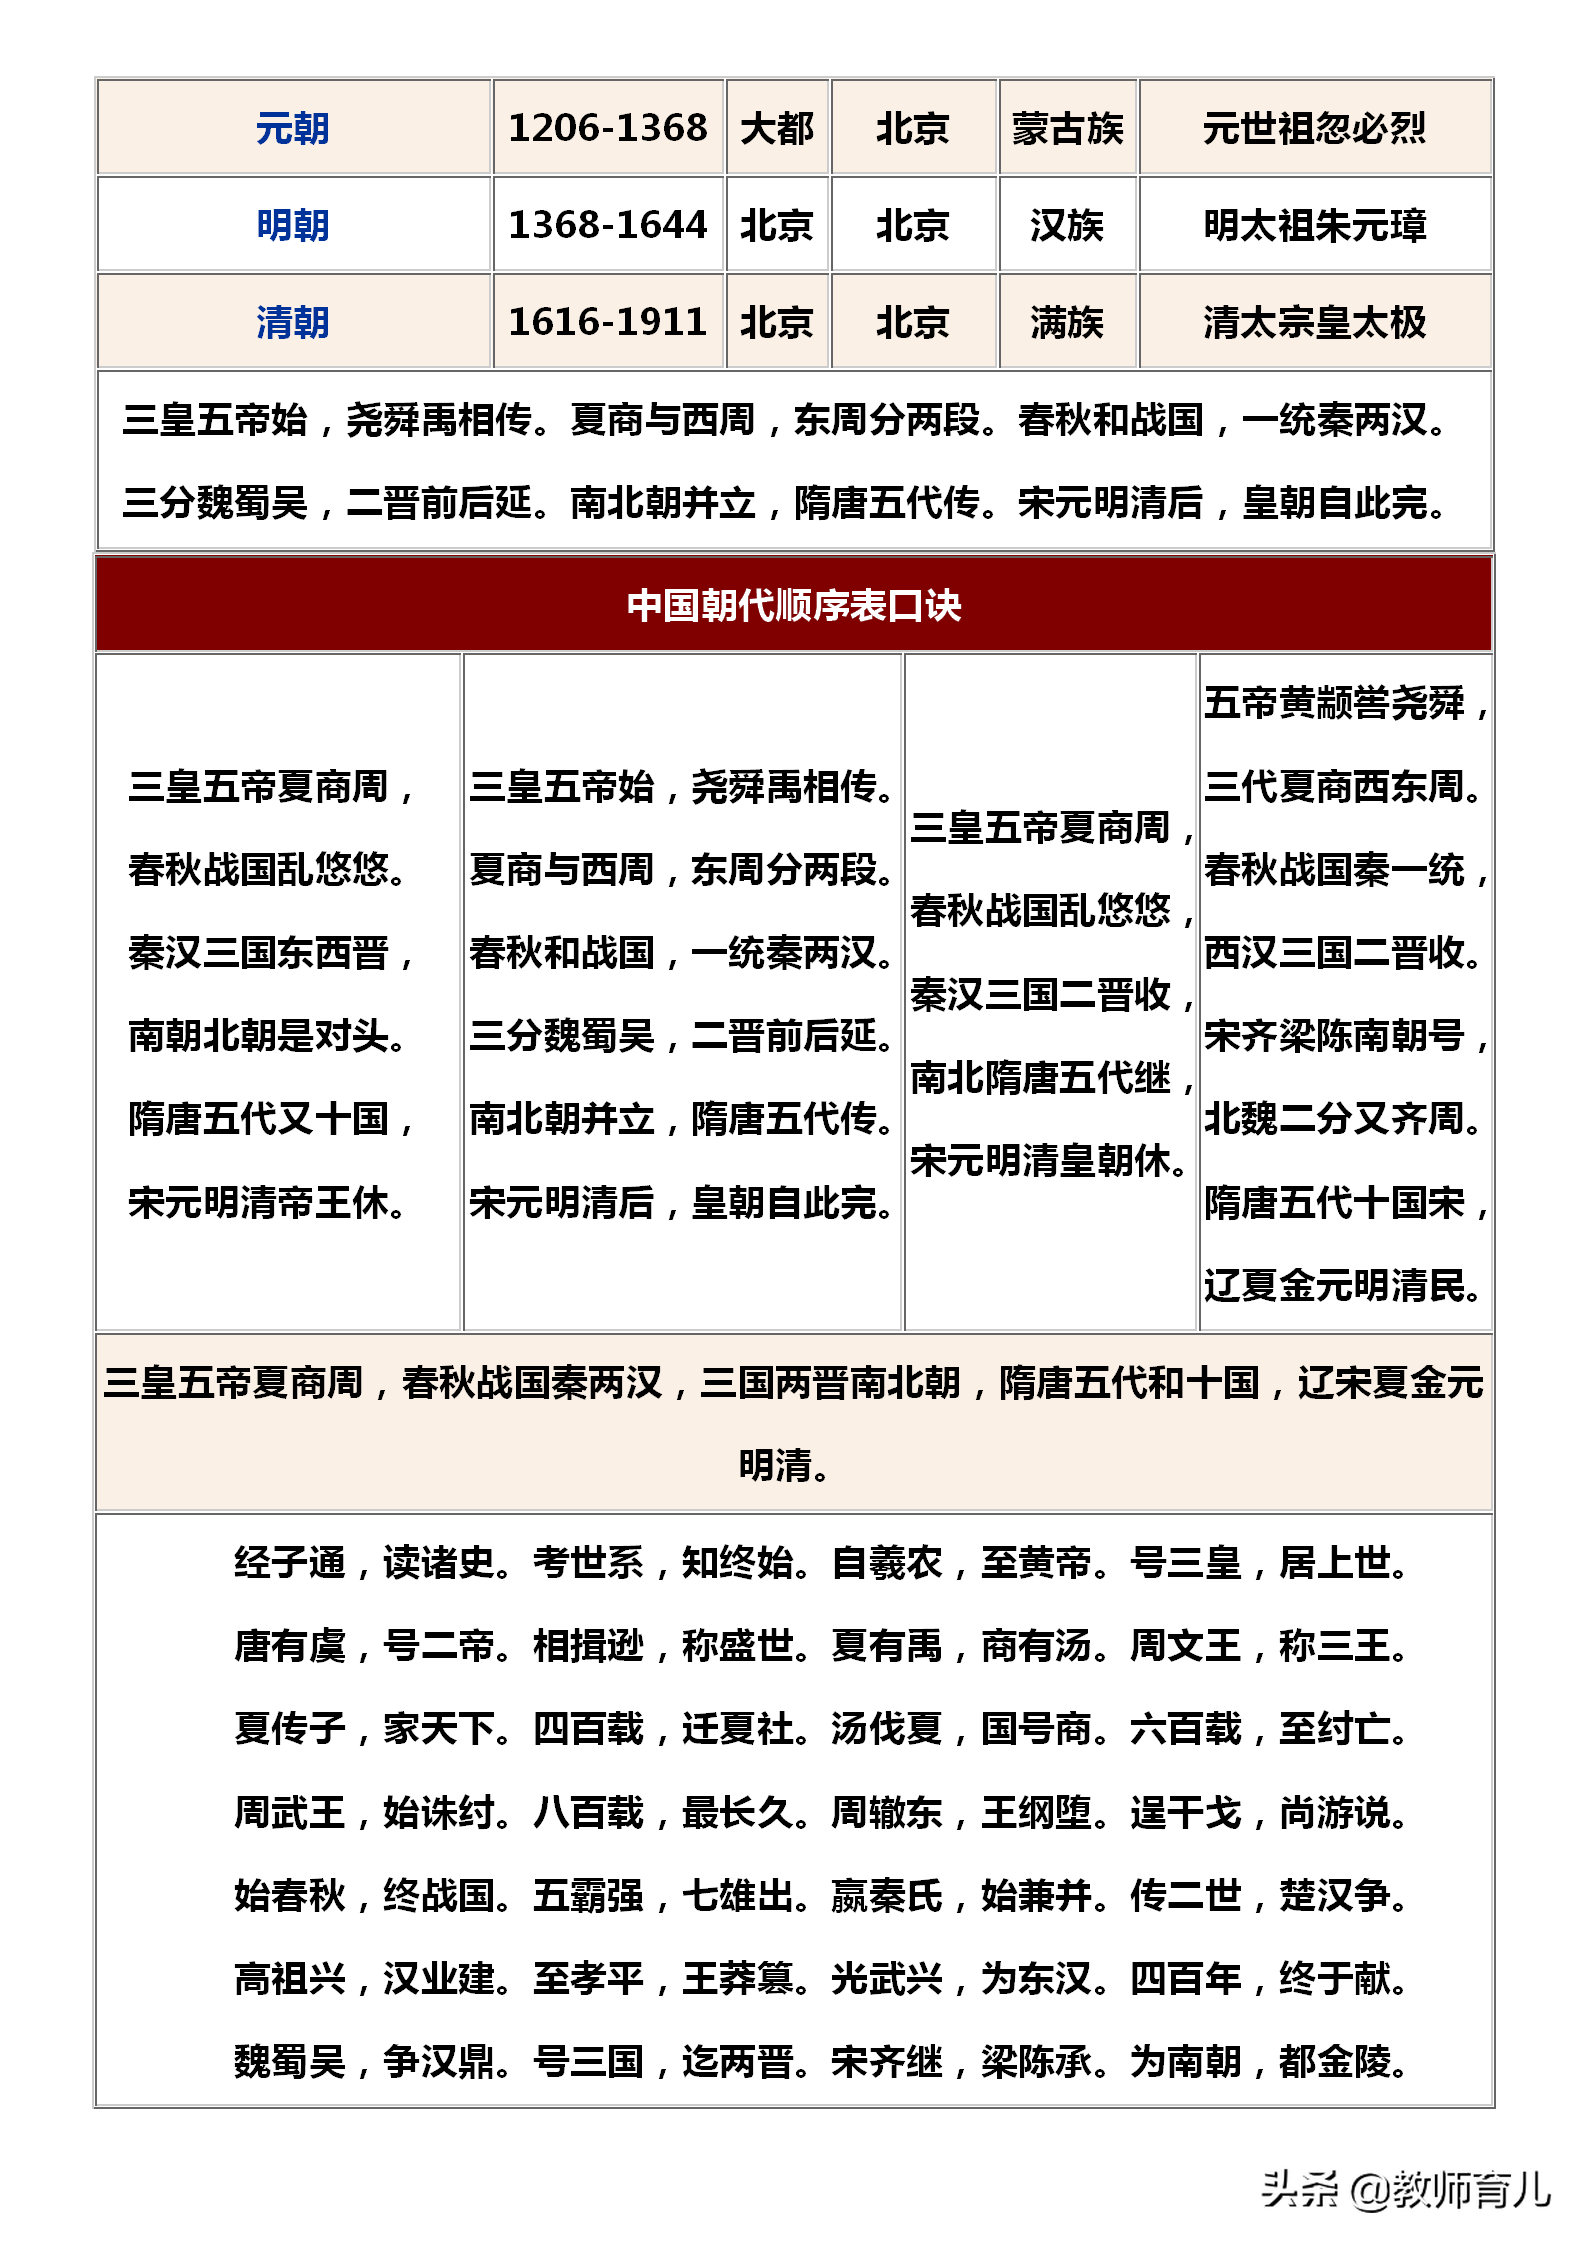 中国历史朝代顺序表背诵口诀 中国历史朝代顺序表顺口溜